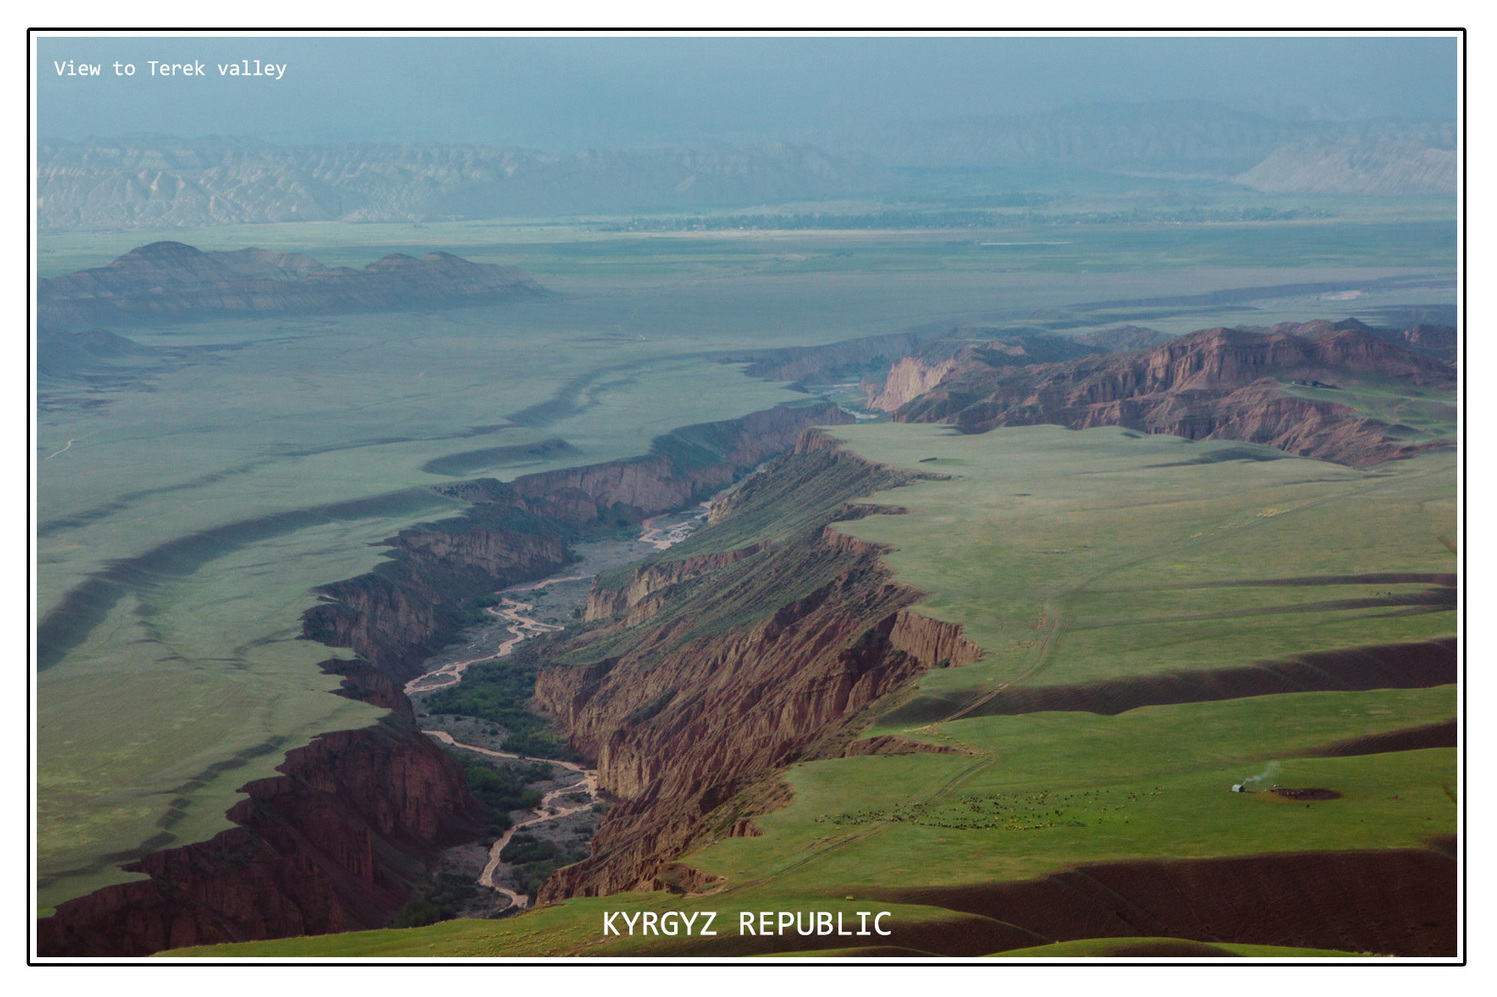 View to Terek valley, Kyrgyzstan 